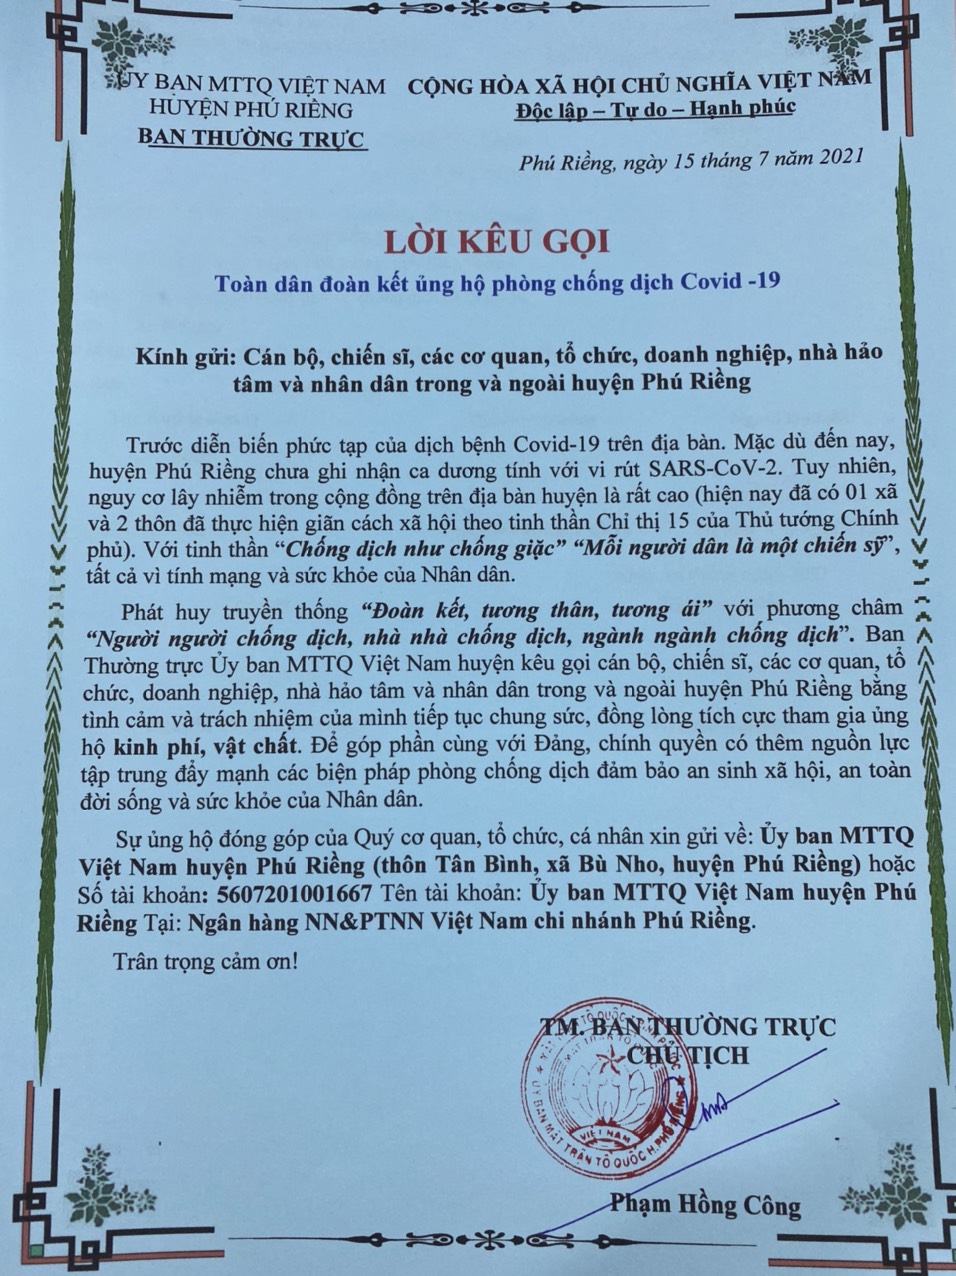 Lời kêu gọi toàn dân đoàn kết ủng hộ phòng chống dịch Covid-19  của Ban Thường trực Ủy ban MTTQ Việt Nam huyện Phú Riềng